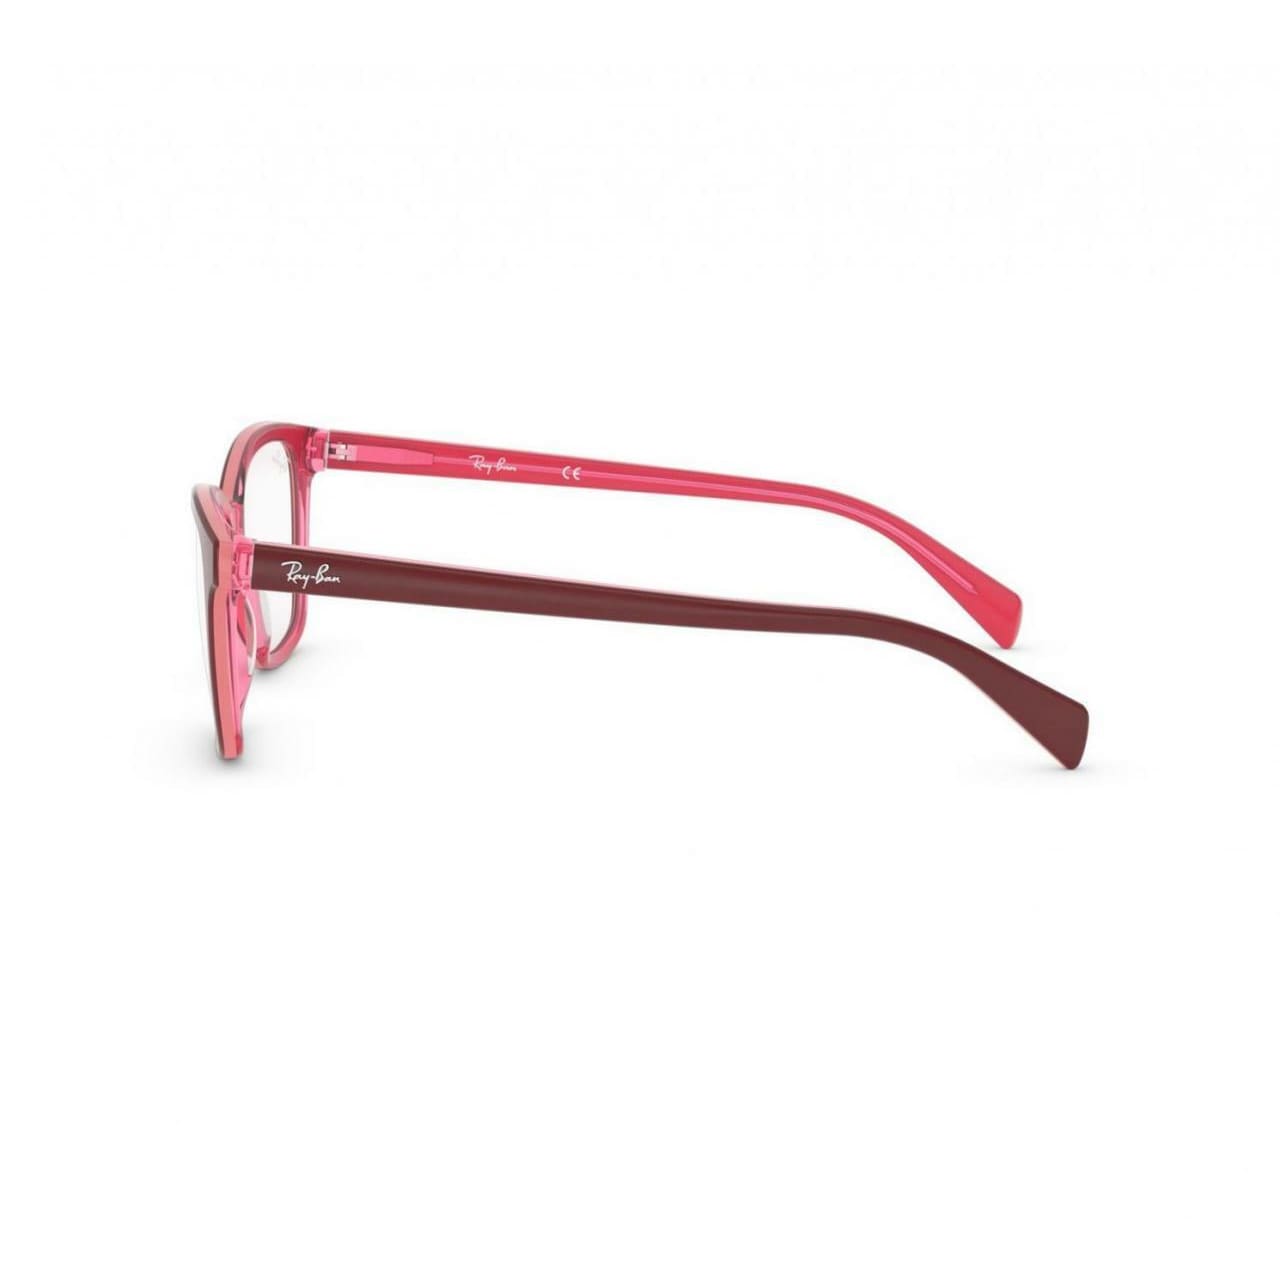 Ray-Ban RB5362-5777 Purple Reddish Square Women’s Eyeglasses